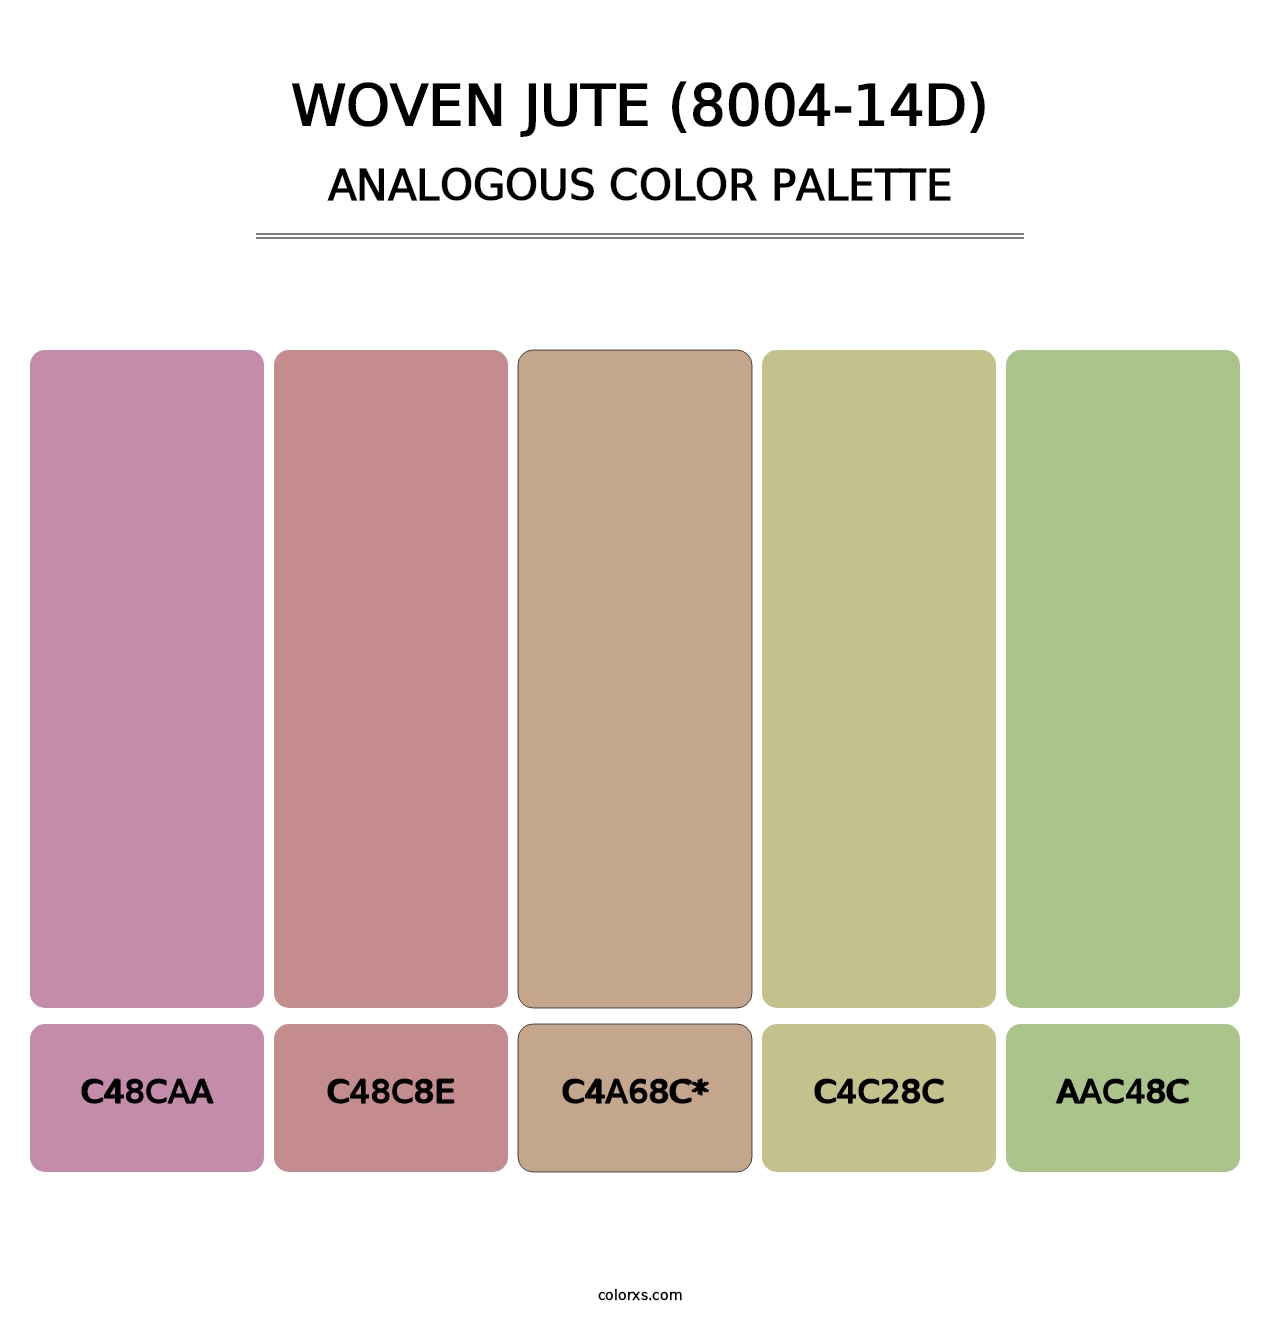 Woven Jute (8004-14D) - Analogous Color Palette